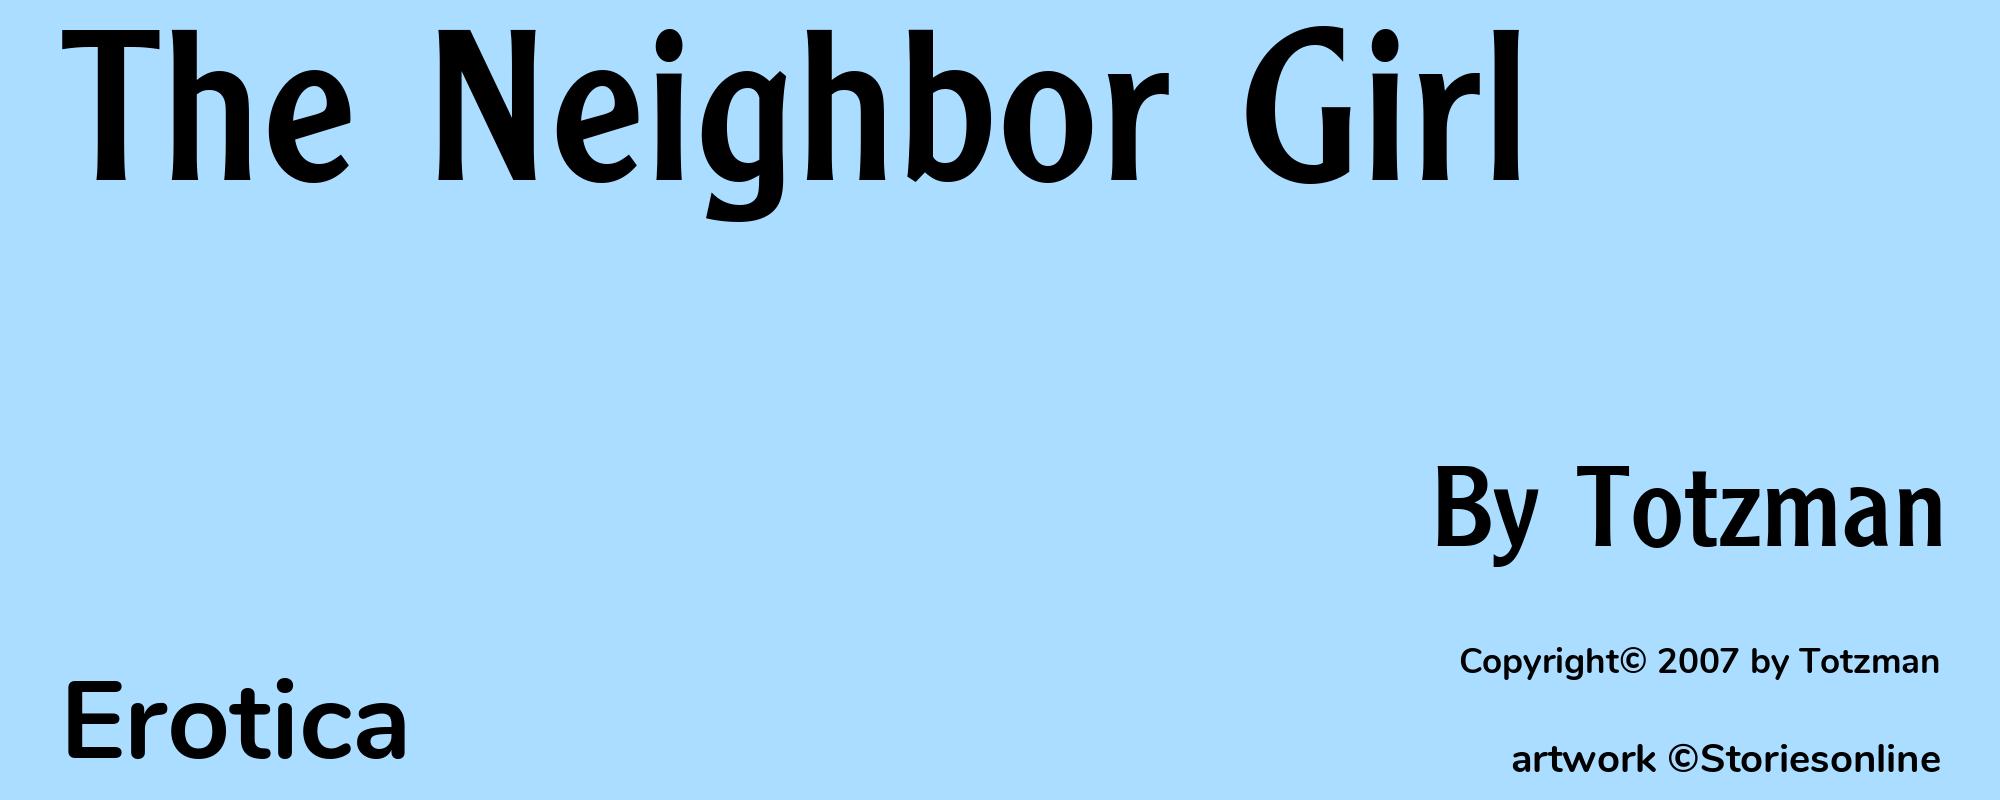 The Neighbor Girl - Cover